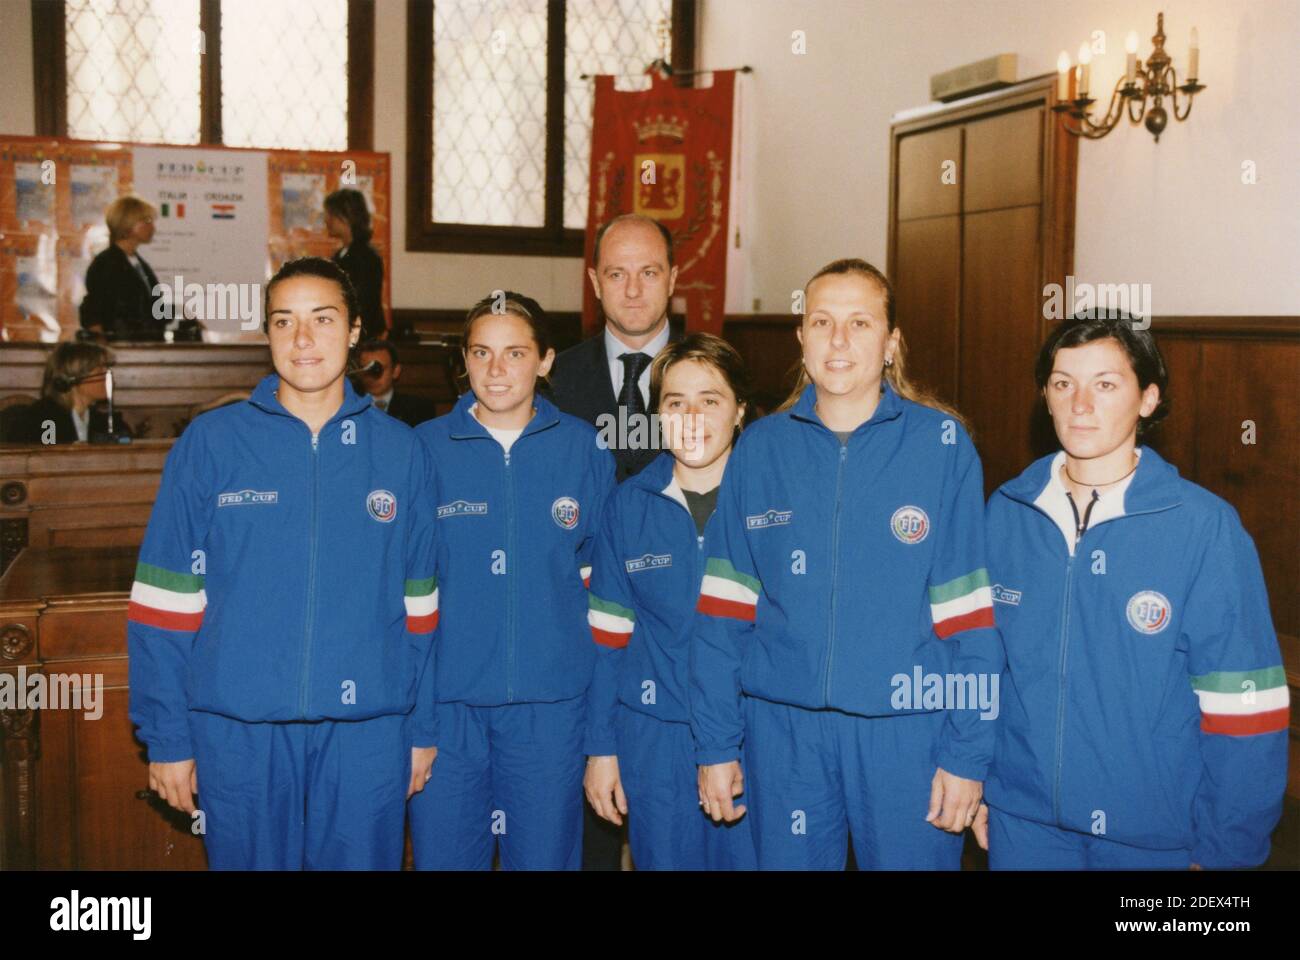 Équipe italienne de tennis féminine, années 1990 Banque D'Images